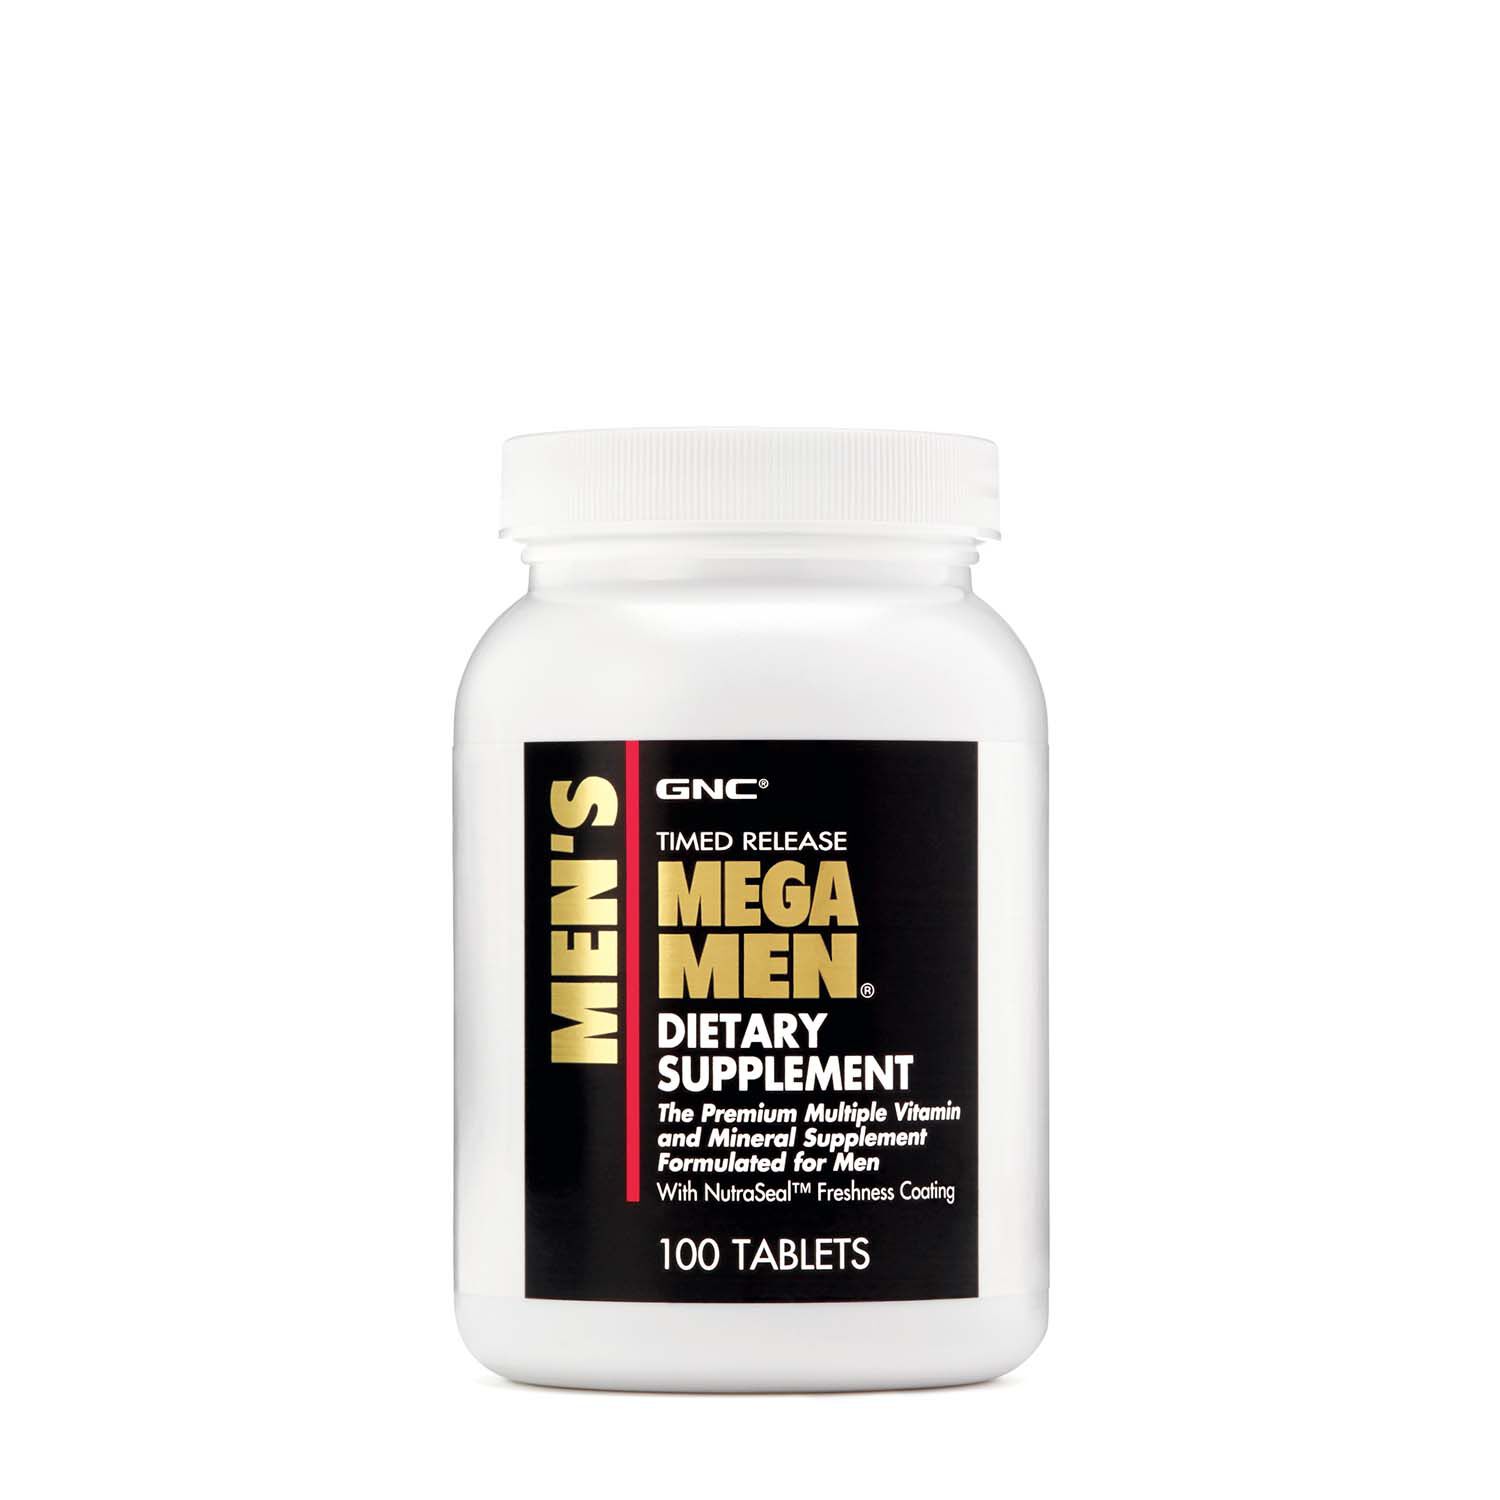 Витамины и минералы GNC Mega Men, 100 таблеток,  мл, GNC. Витамины и минералы. Поддержание здоровья Укрепление иммунитета 